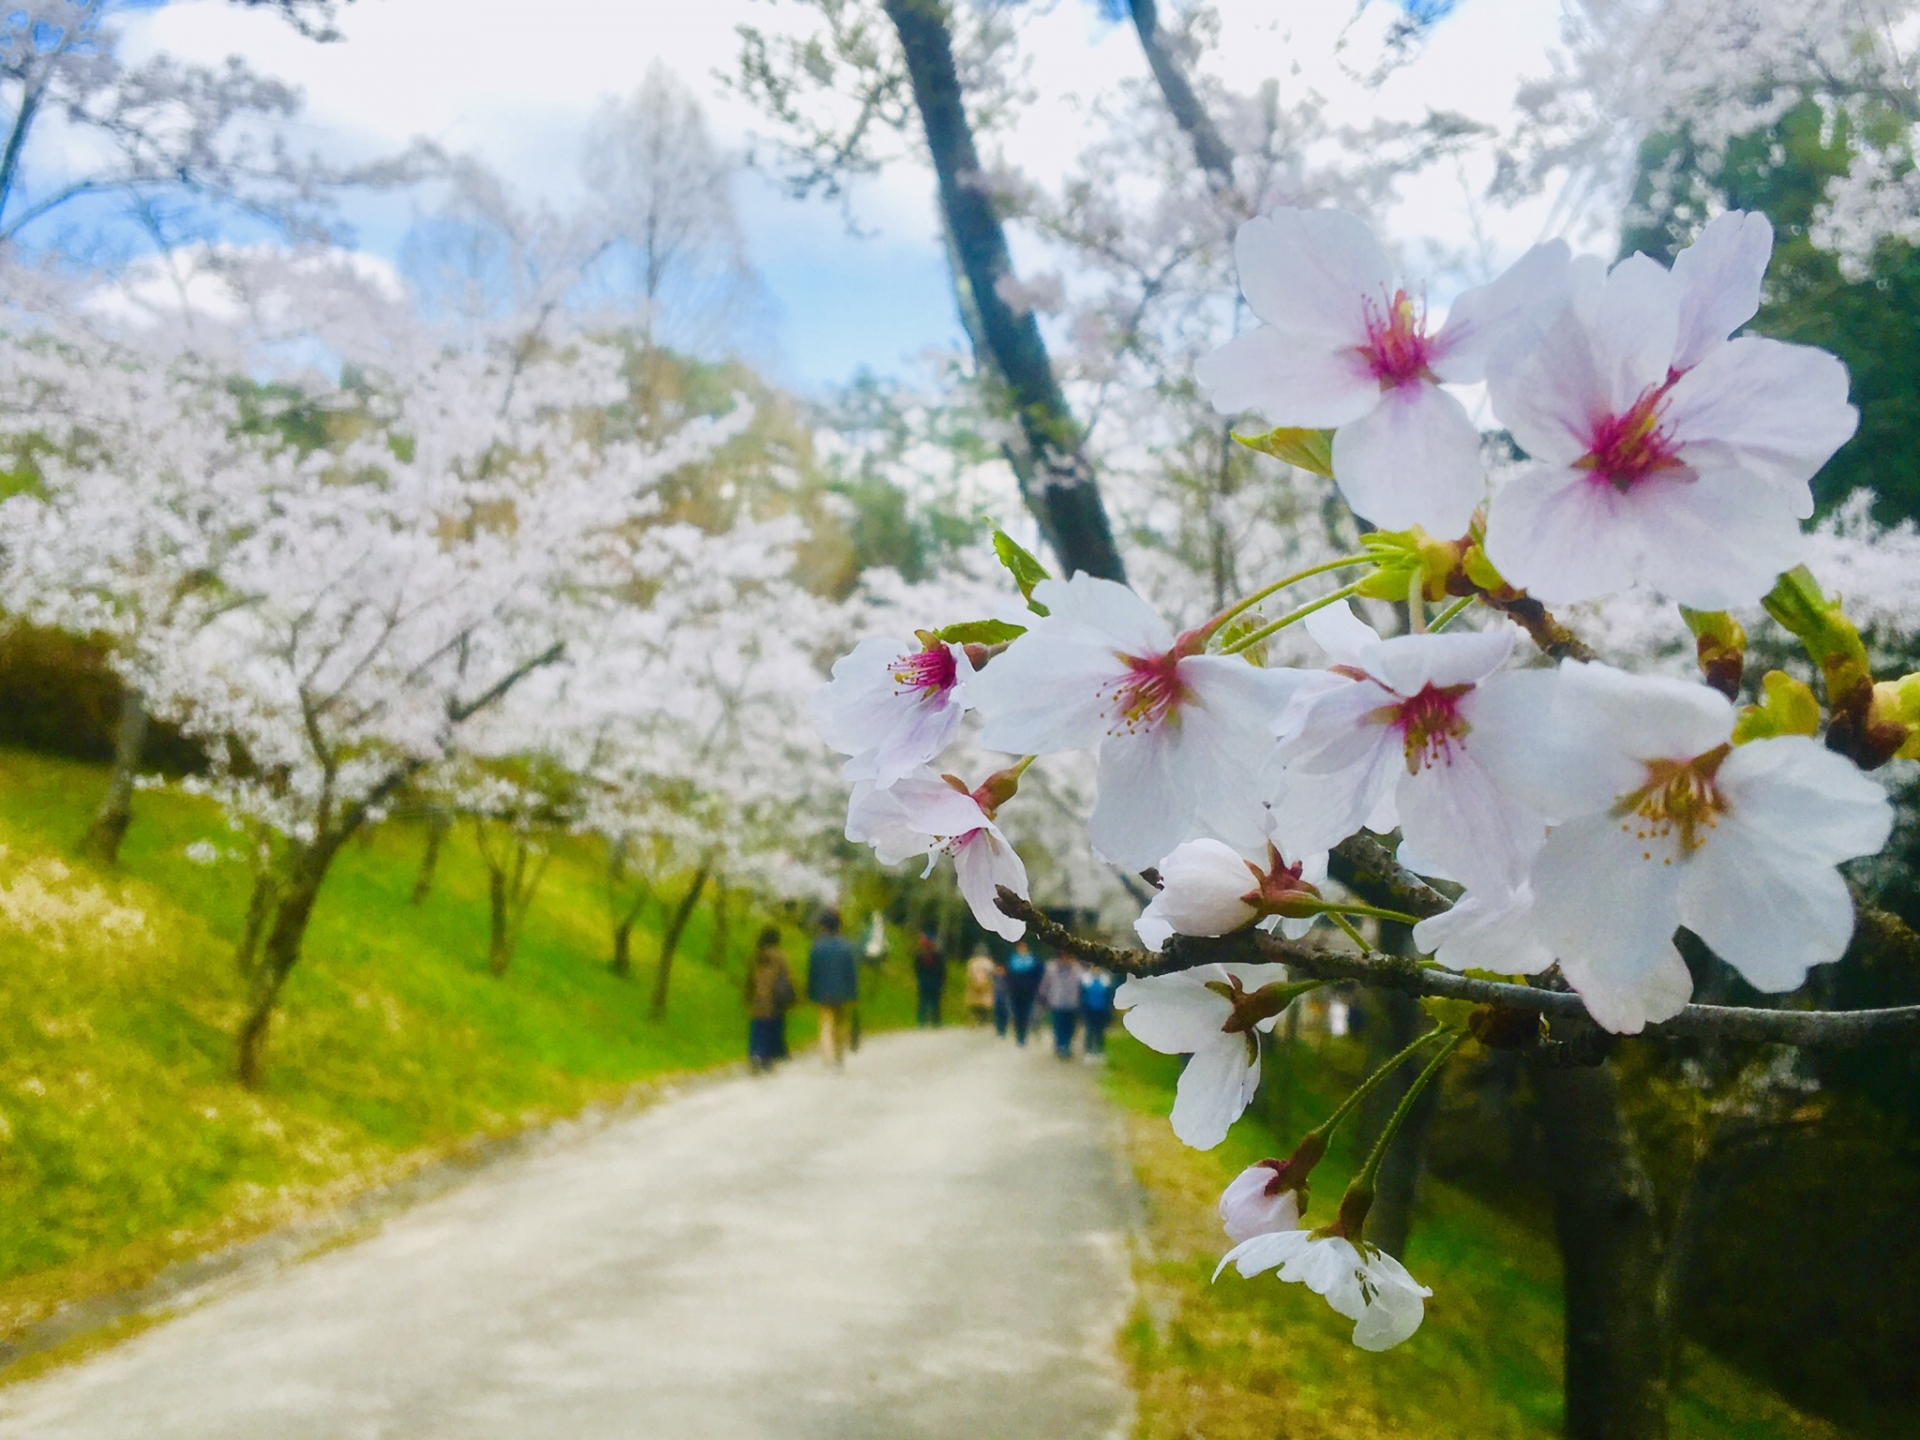 世羅甲山ふれあいの里桜まつり21 しだれ桜の開花情報など 情報発信ブログサイト Blue Rose